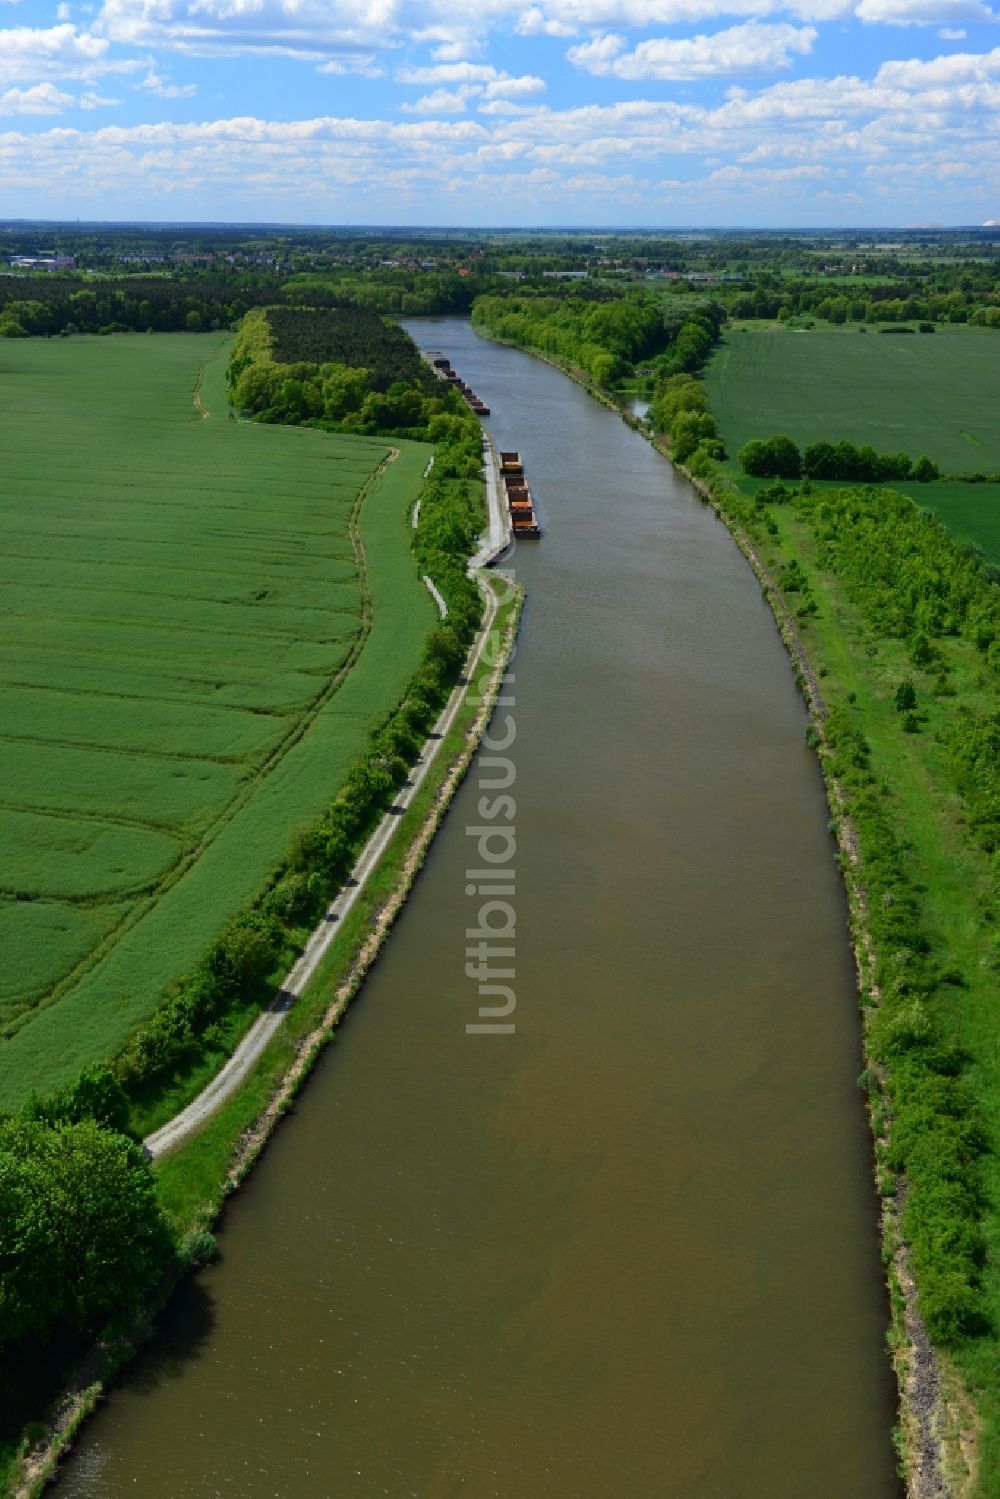 Luftbild Bergzow - Streckenverlauf der Wasserstraße Elbe-Havel-Kanal bei Bergzow im Bundesland Sachsen-Anhalt